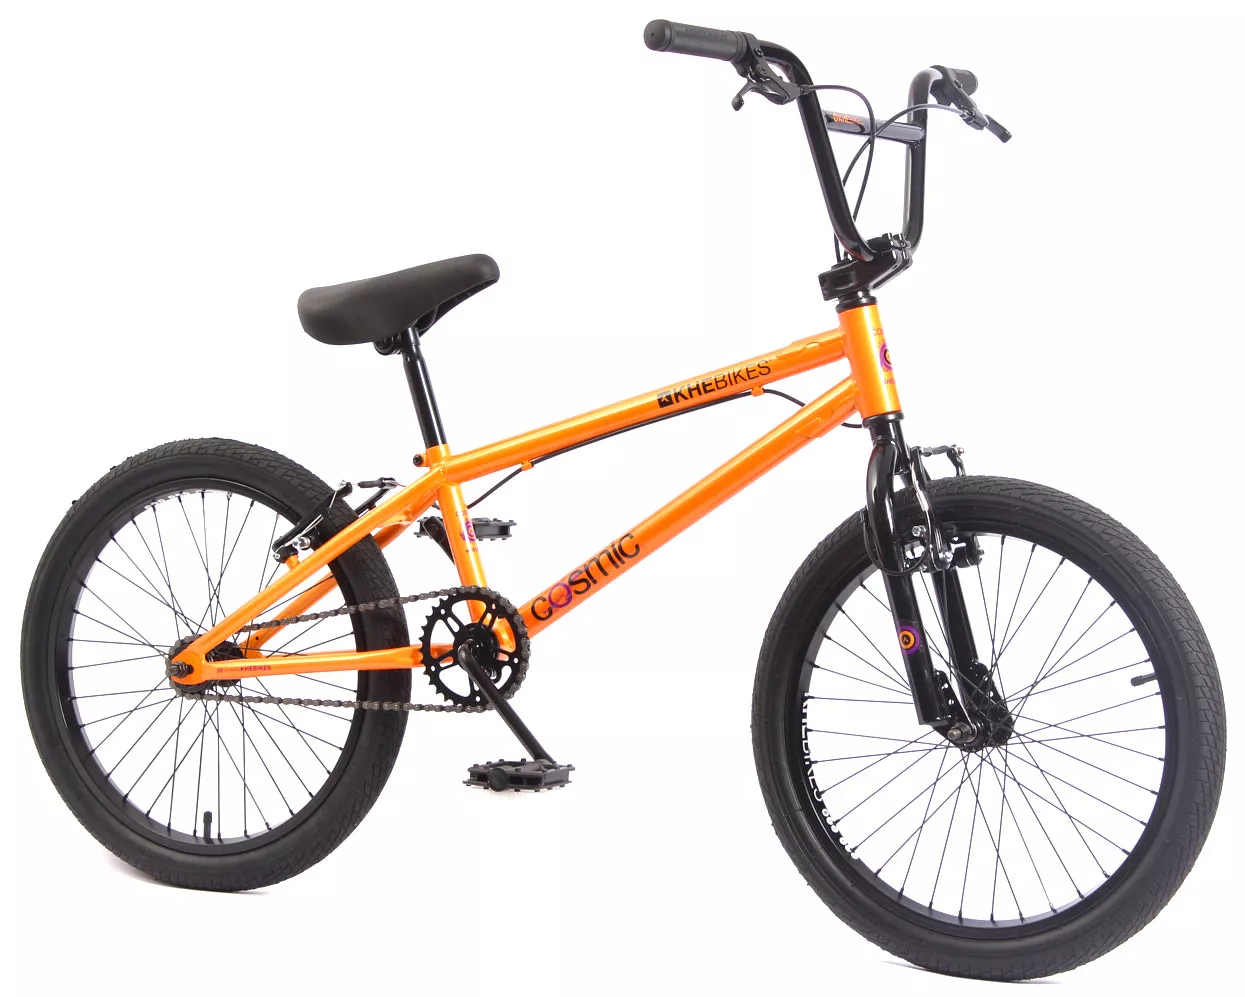 Outlet N3 : BMX bike KHE COSMIC 20 inch 24.5lbs